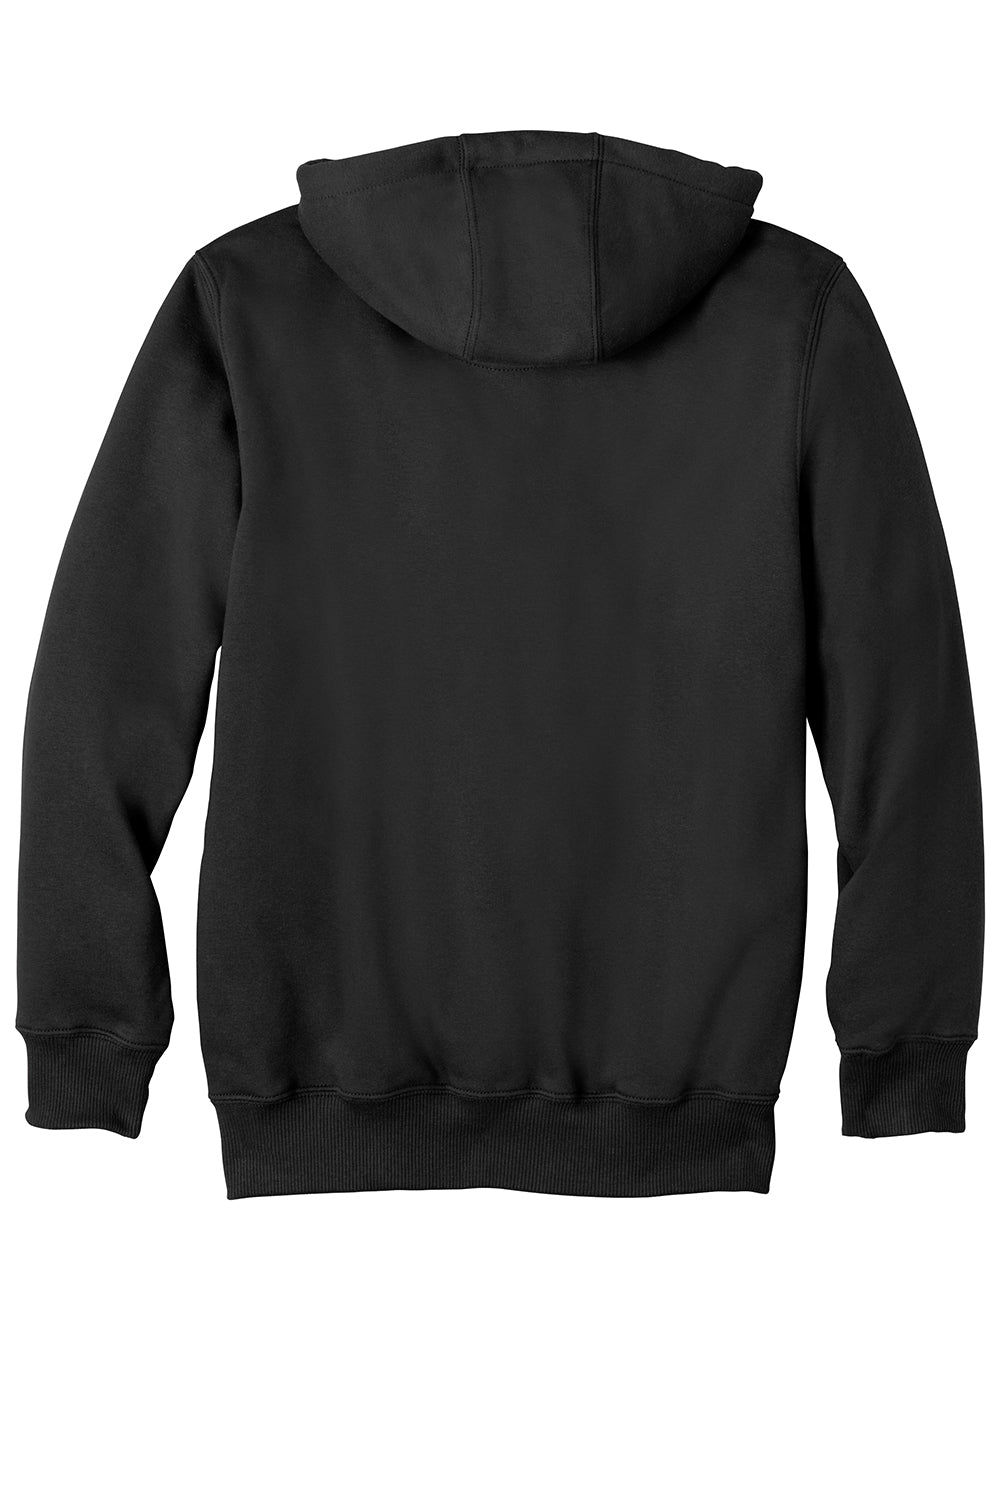 Carhartt CT100614 Mens Paxton Rain Defender Water Resistant Full Zip Hooded Sweatshirt Hoodie Black Flat Back